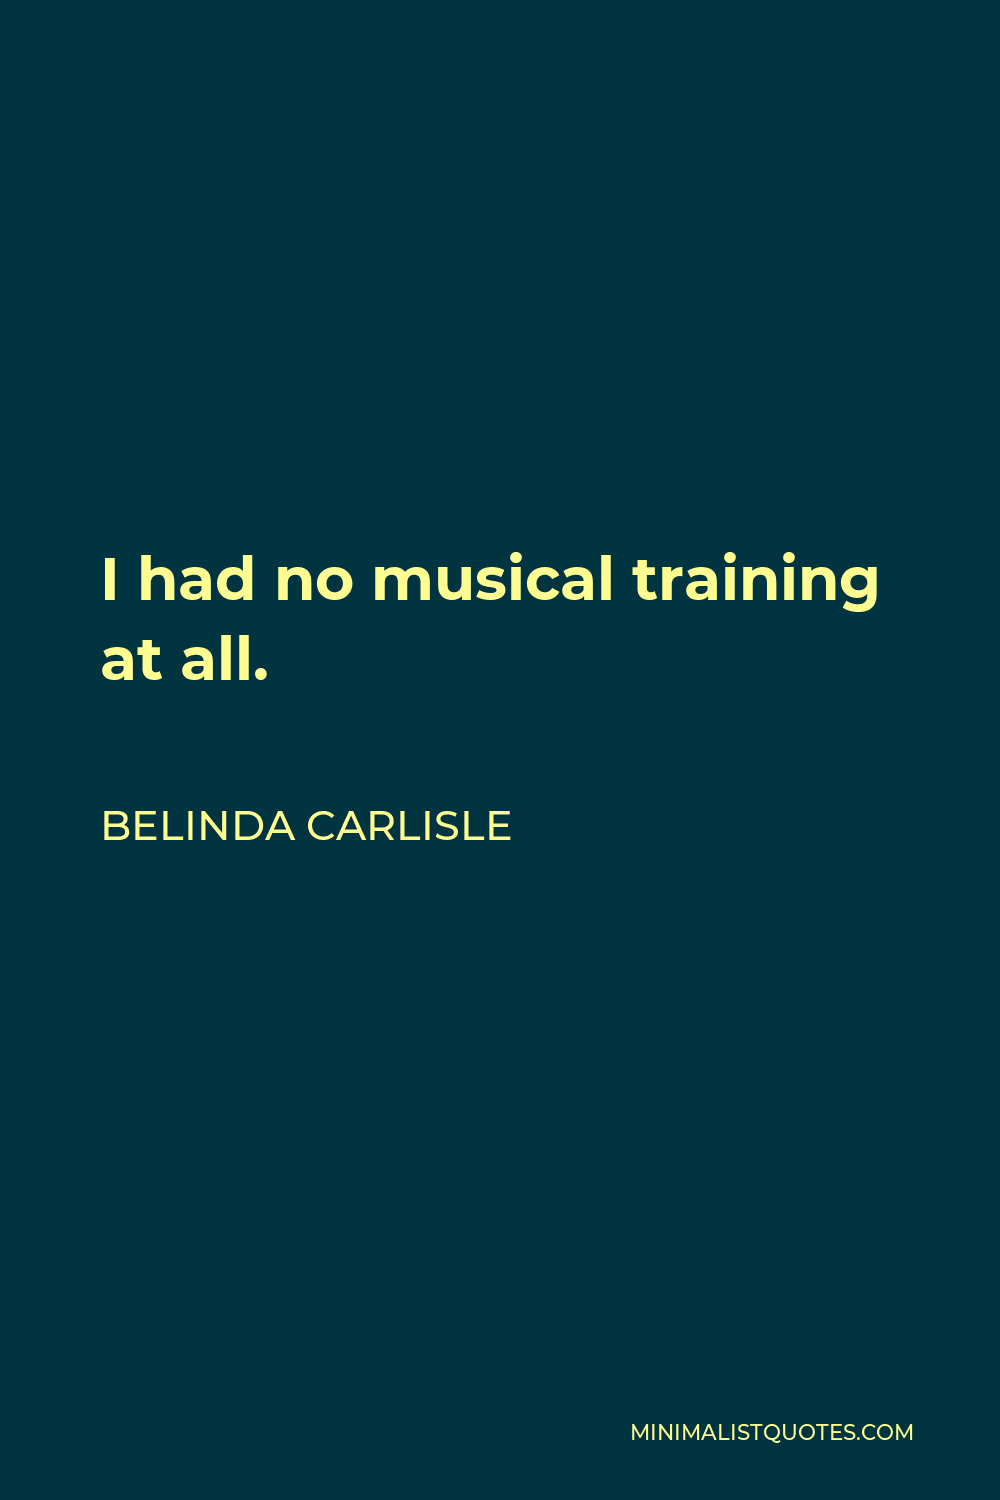 Belinda Carlisle Quote - I had no musical training at all.